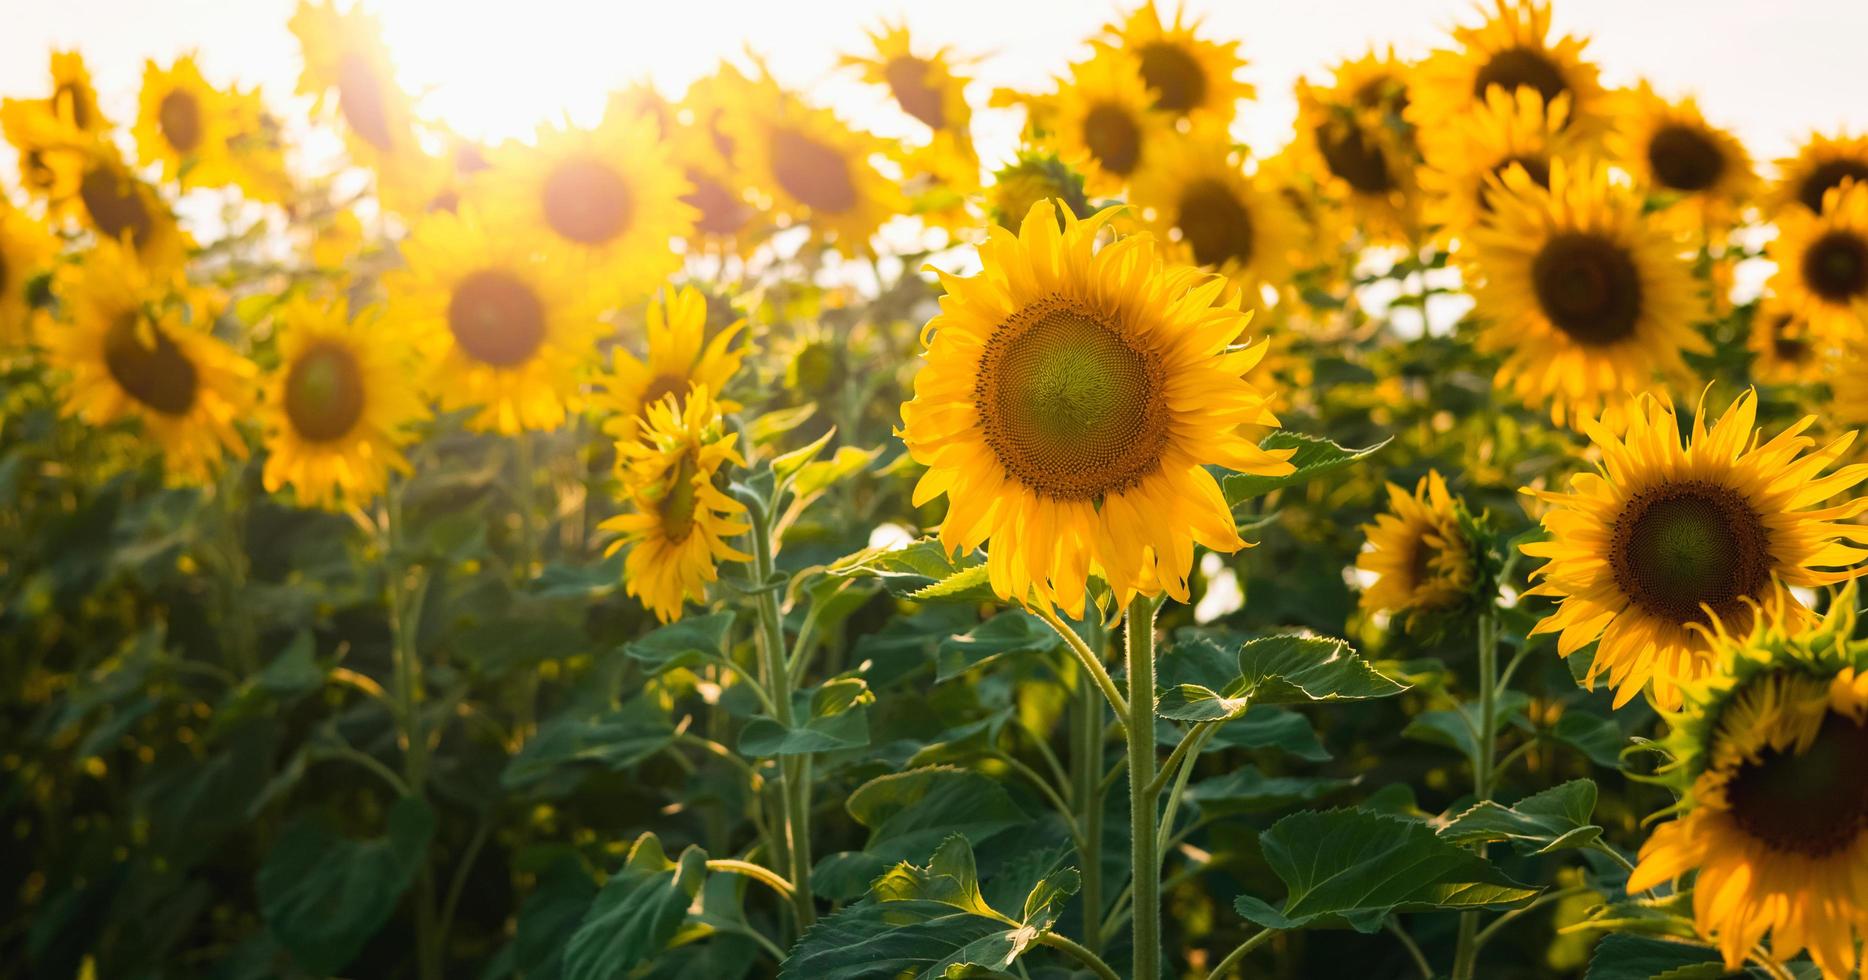 fleur de soleil avec soleil dans le jardin photo